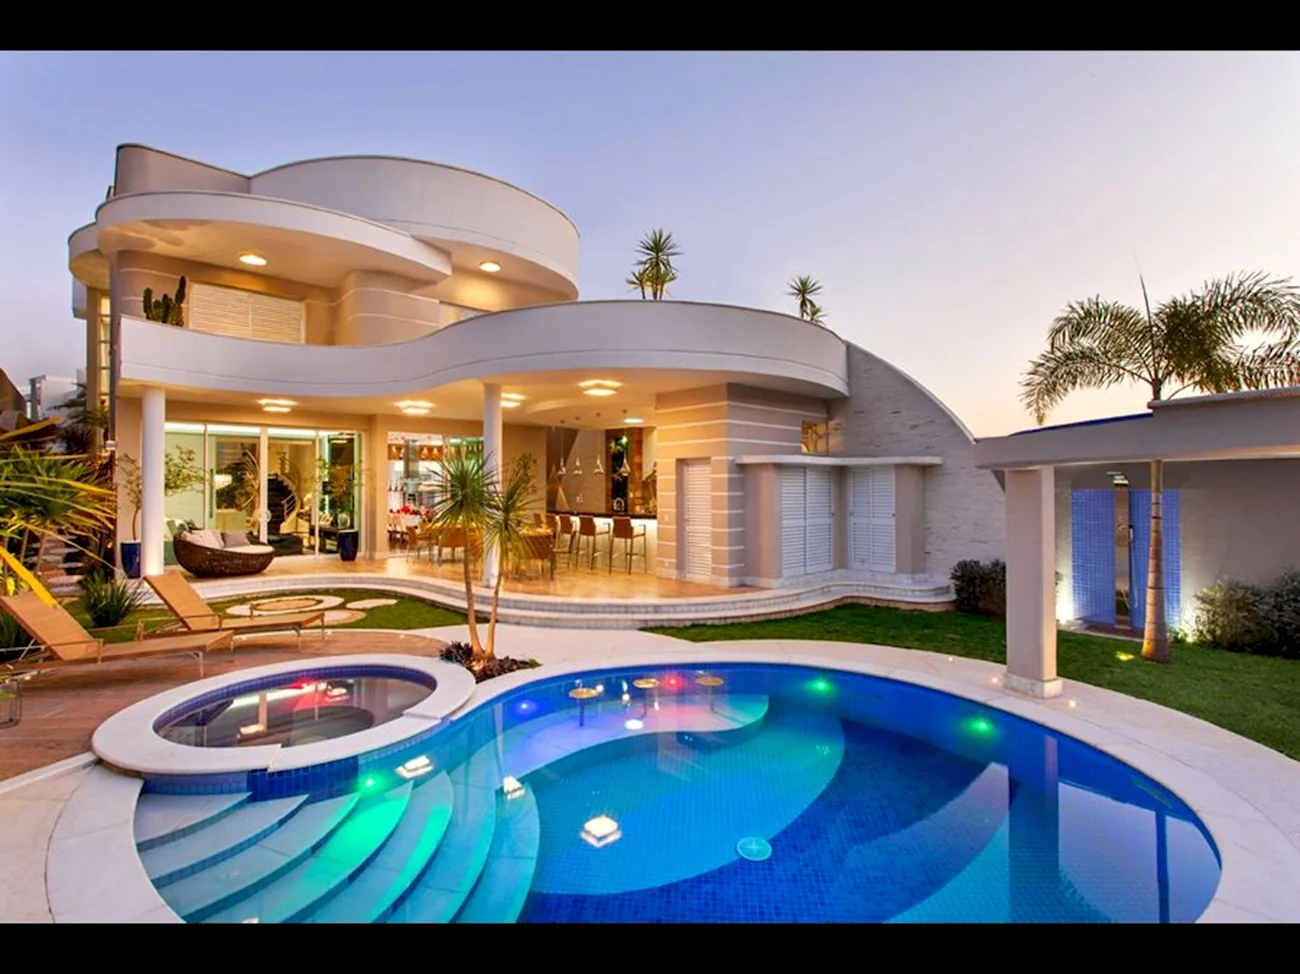 Красивый домик с бассейном. Красивая картинка